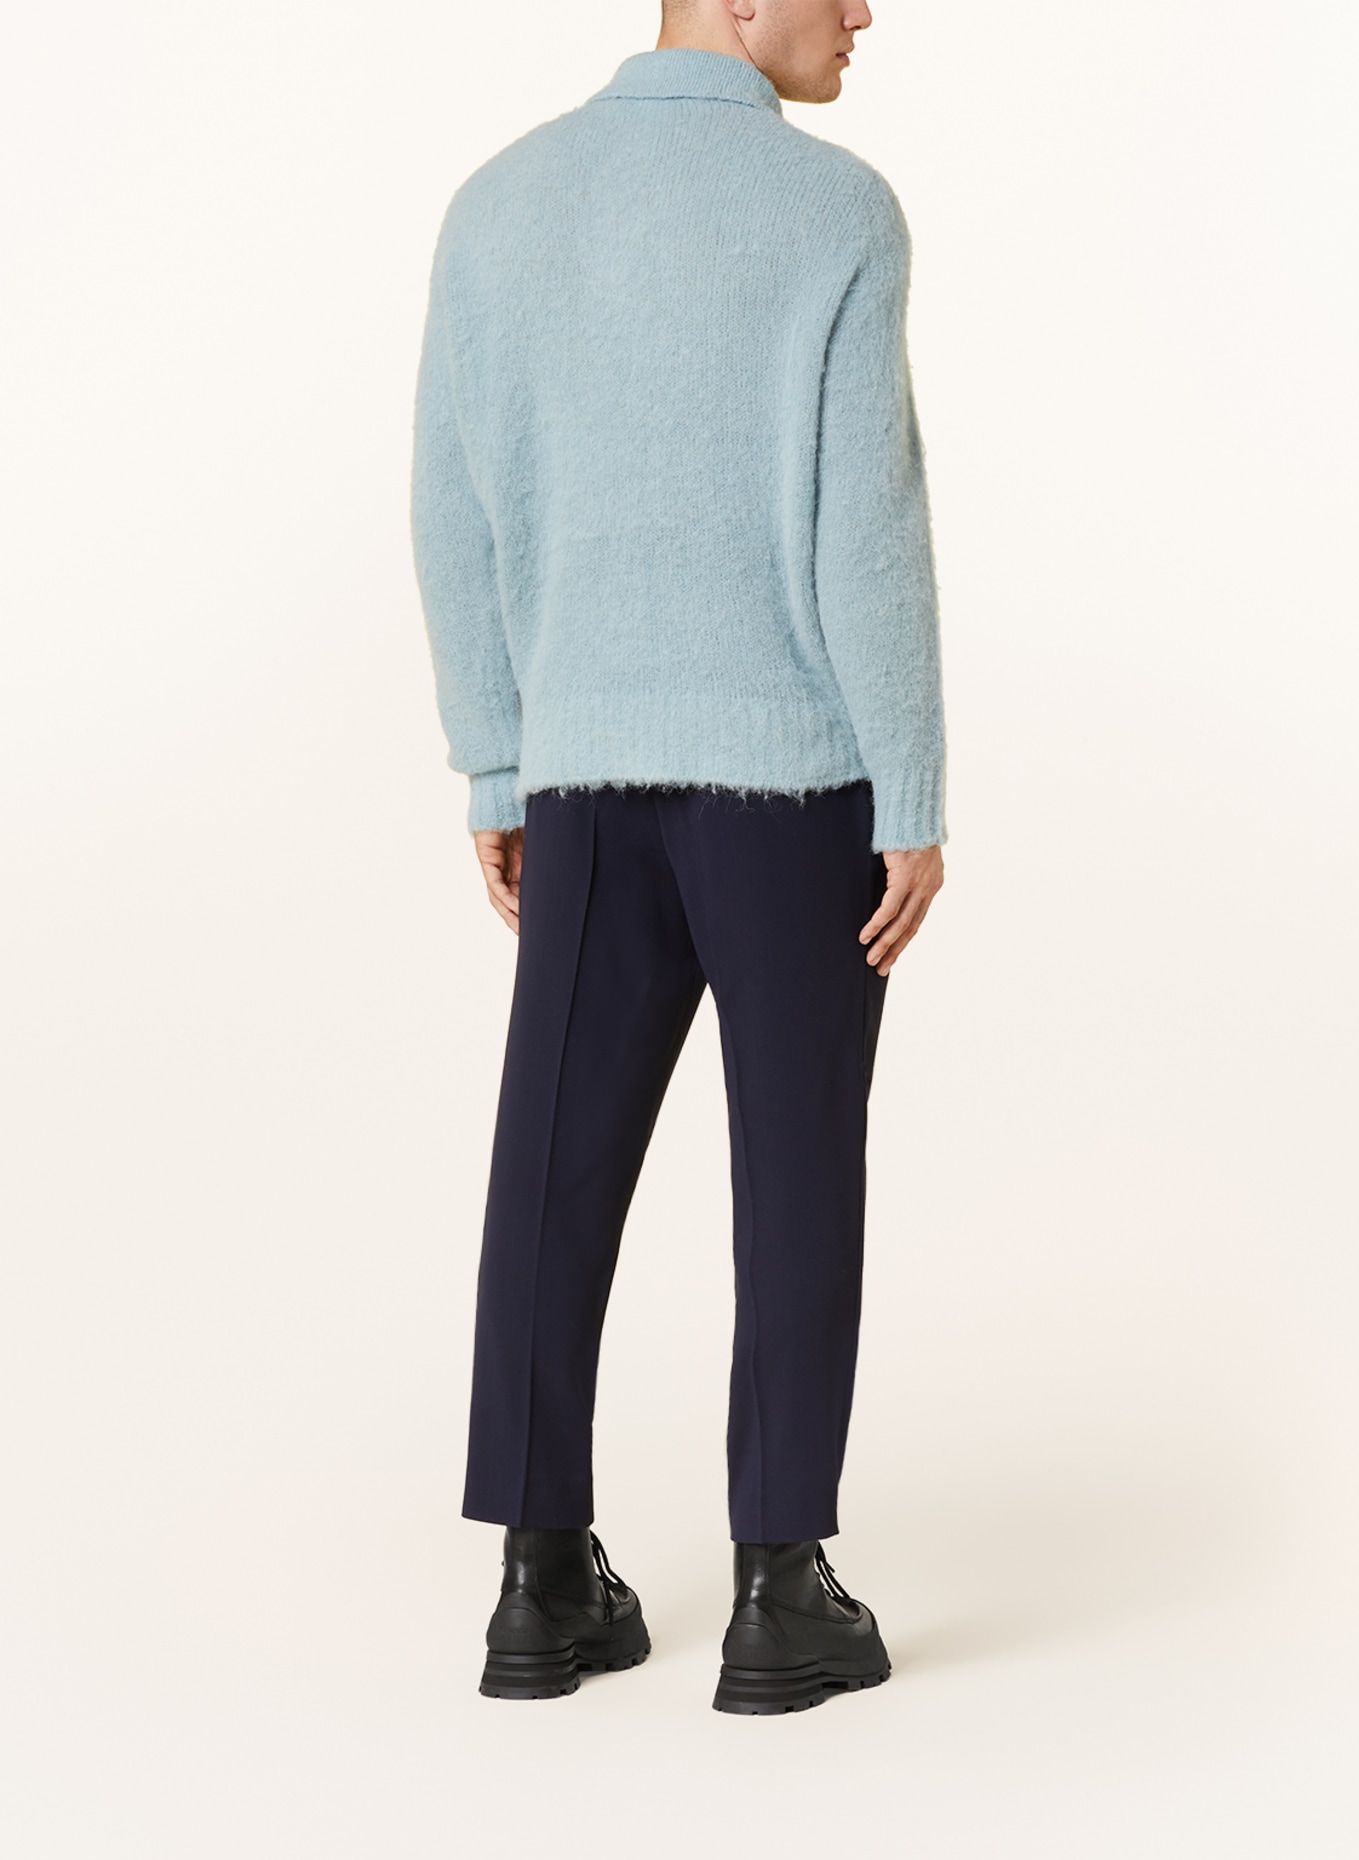 AMI PARIS Sweater with alpaca, Color: LIGHT BLUE (Image 3)